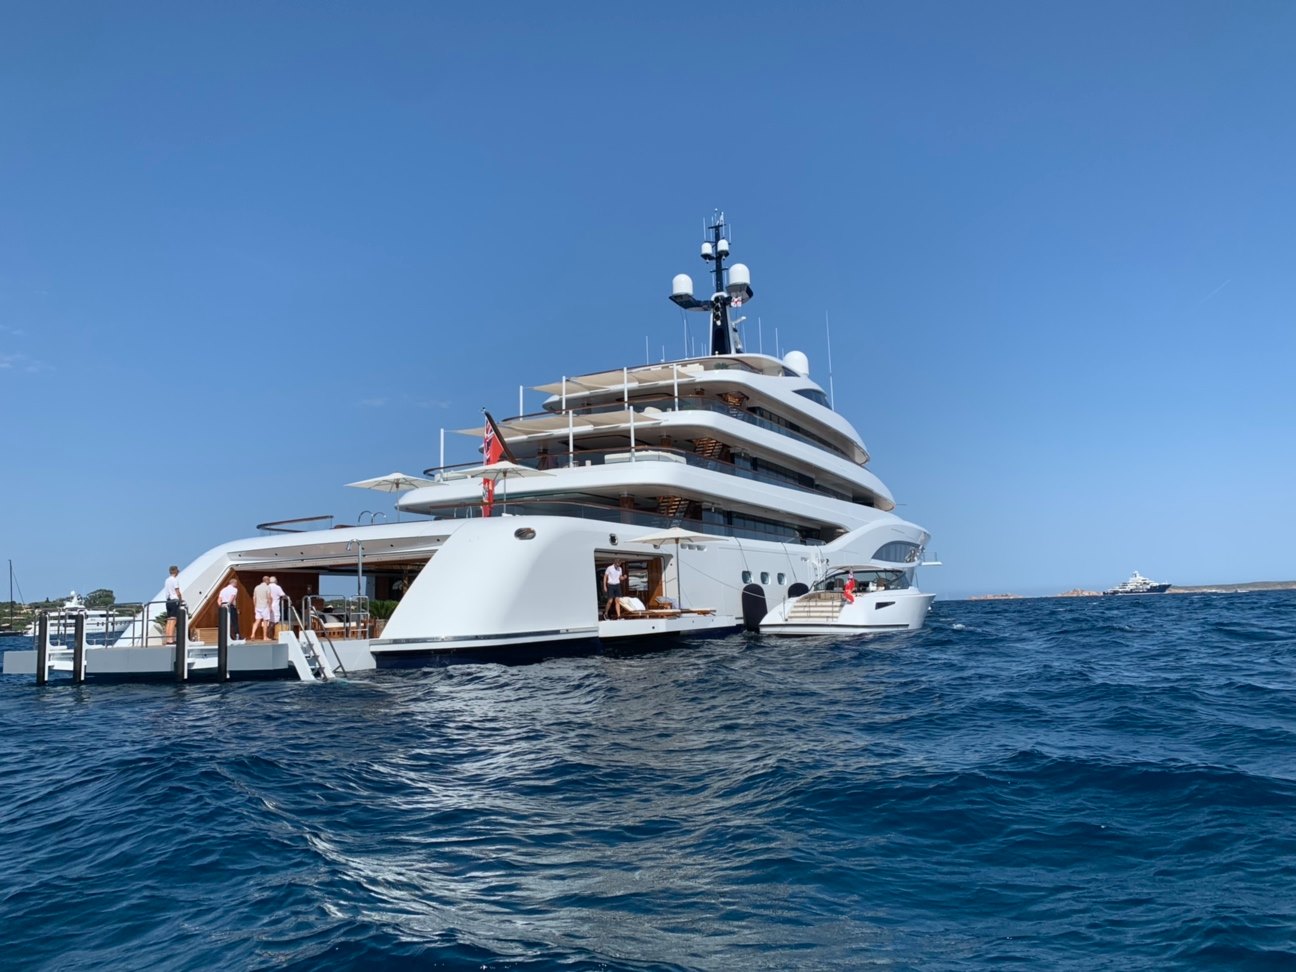 Canadian billionaire's 96m superyacht 